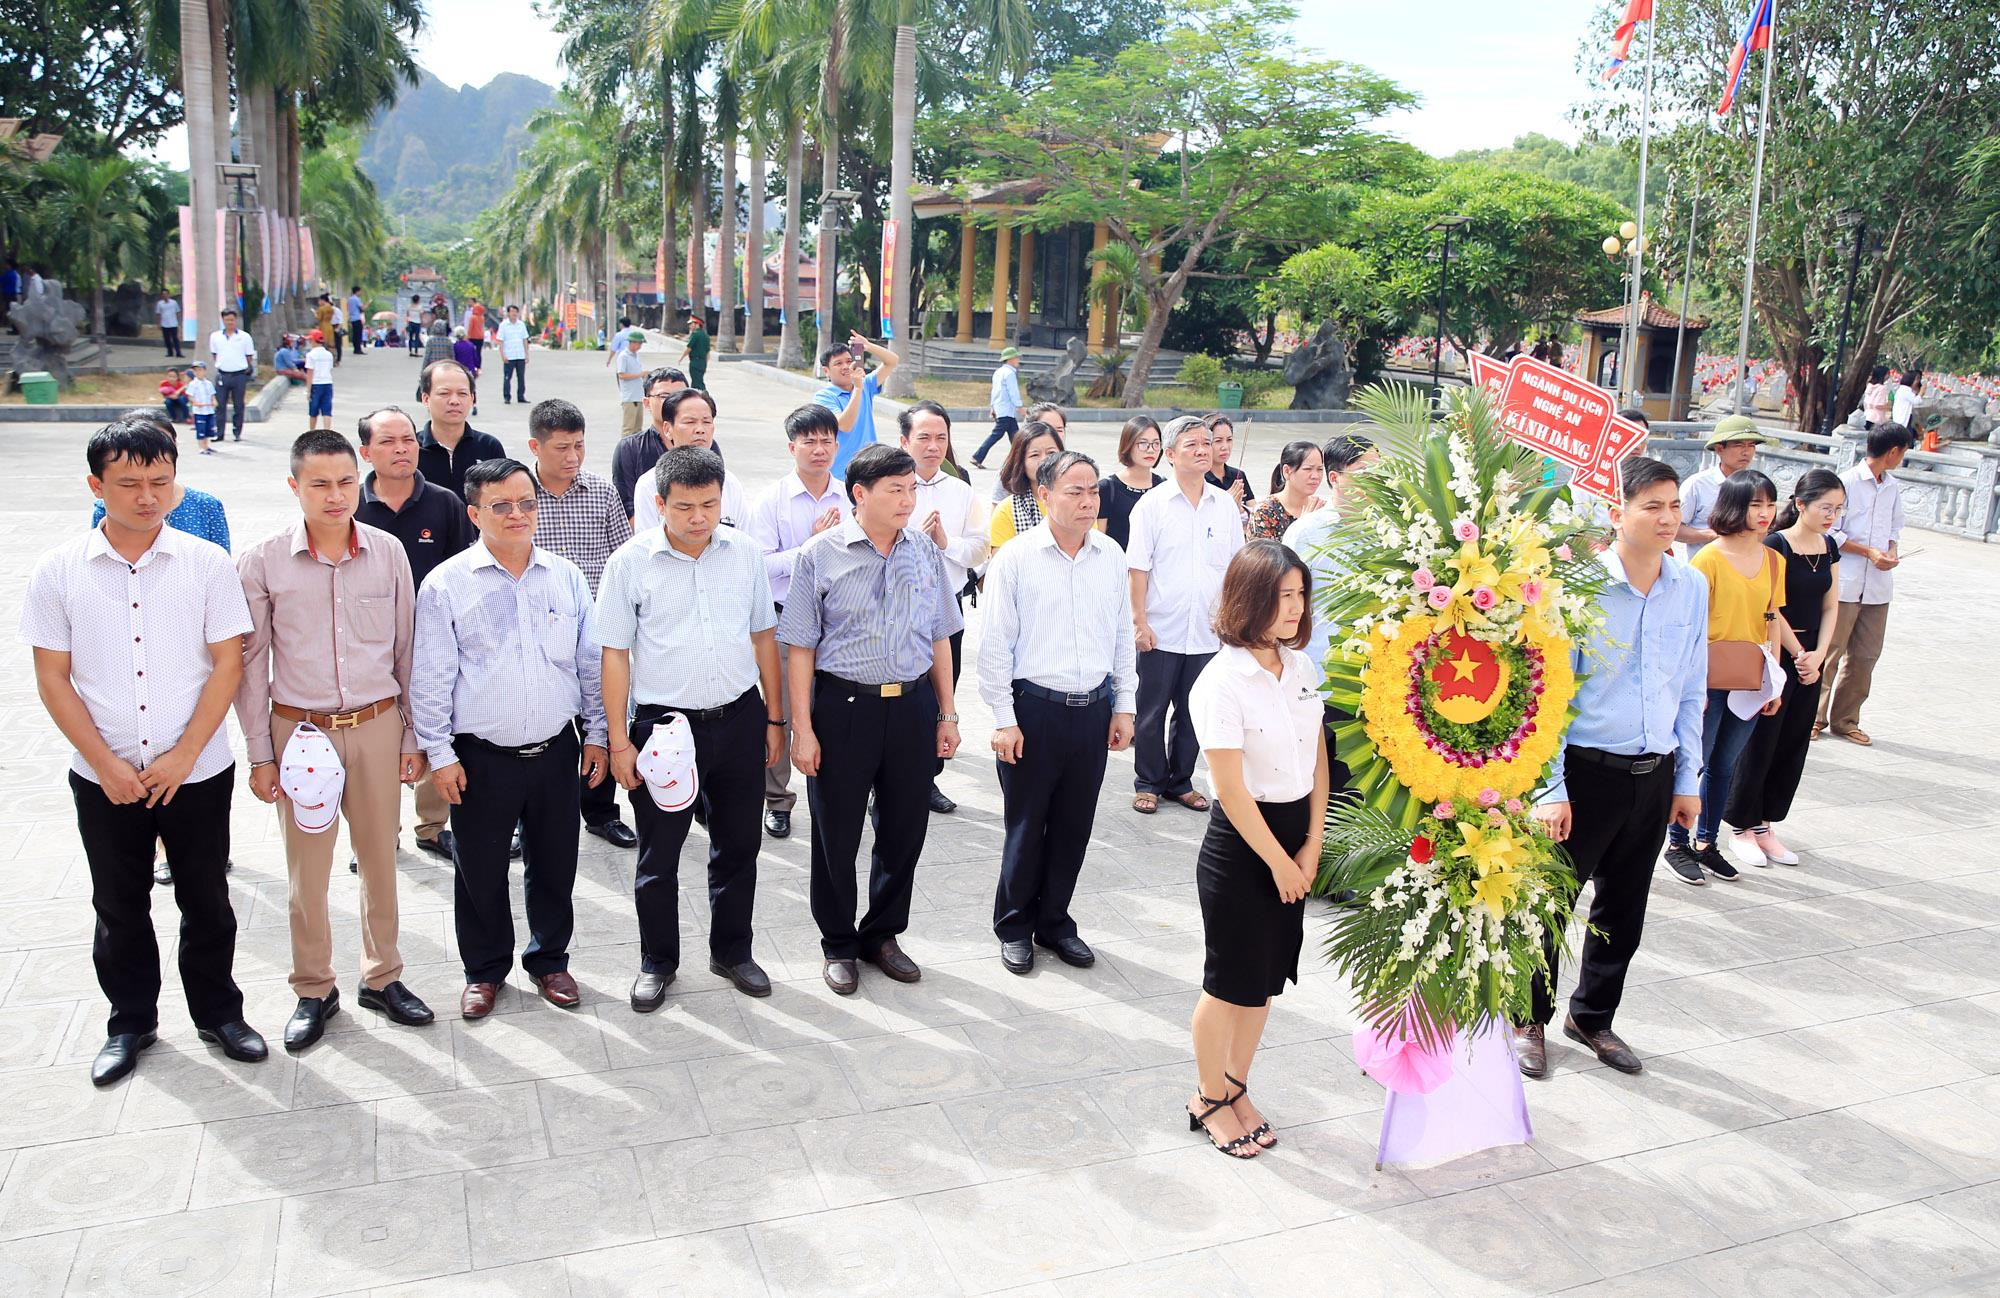 Đoàn công tác dâng hoa tại Đài tưởng niệm Nghĩa trang liệt sỹ quốc té Việt - Lào. Ảnh: Hồ Phương